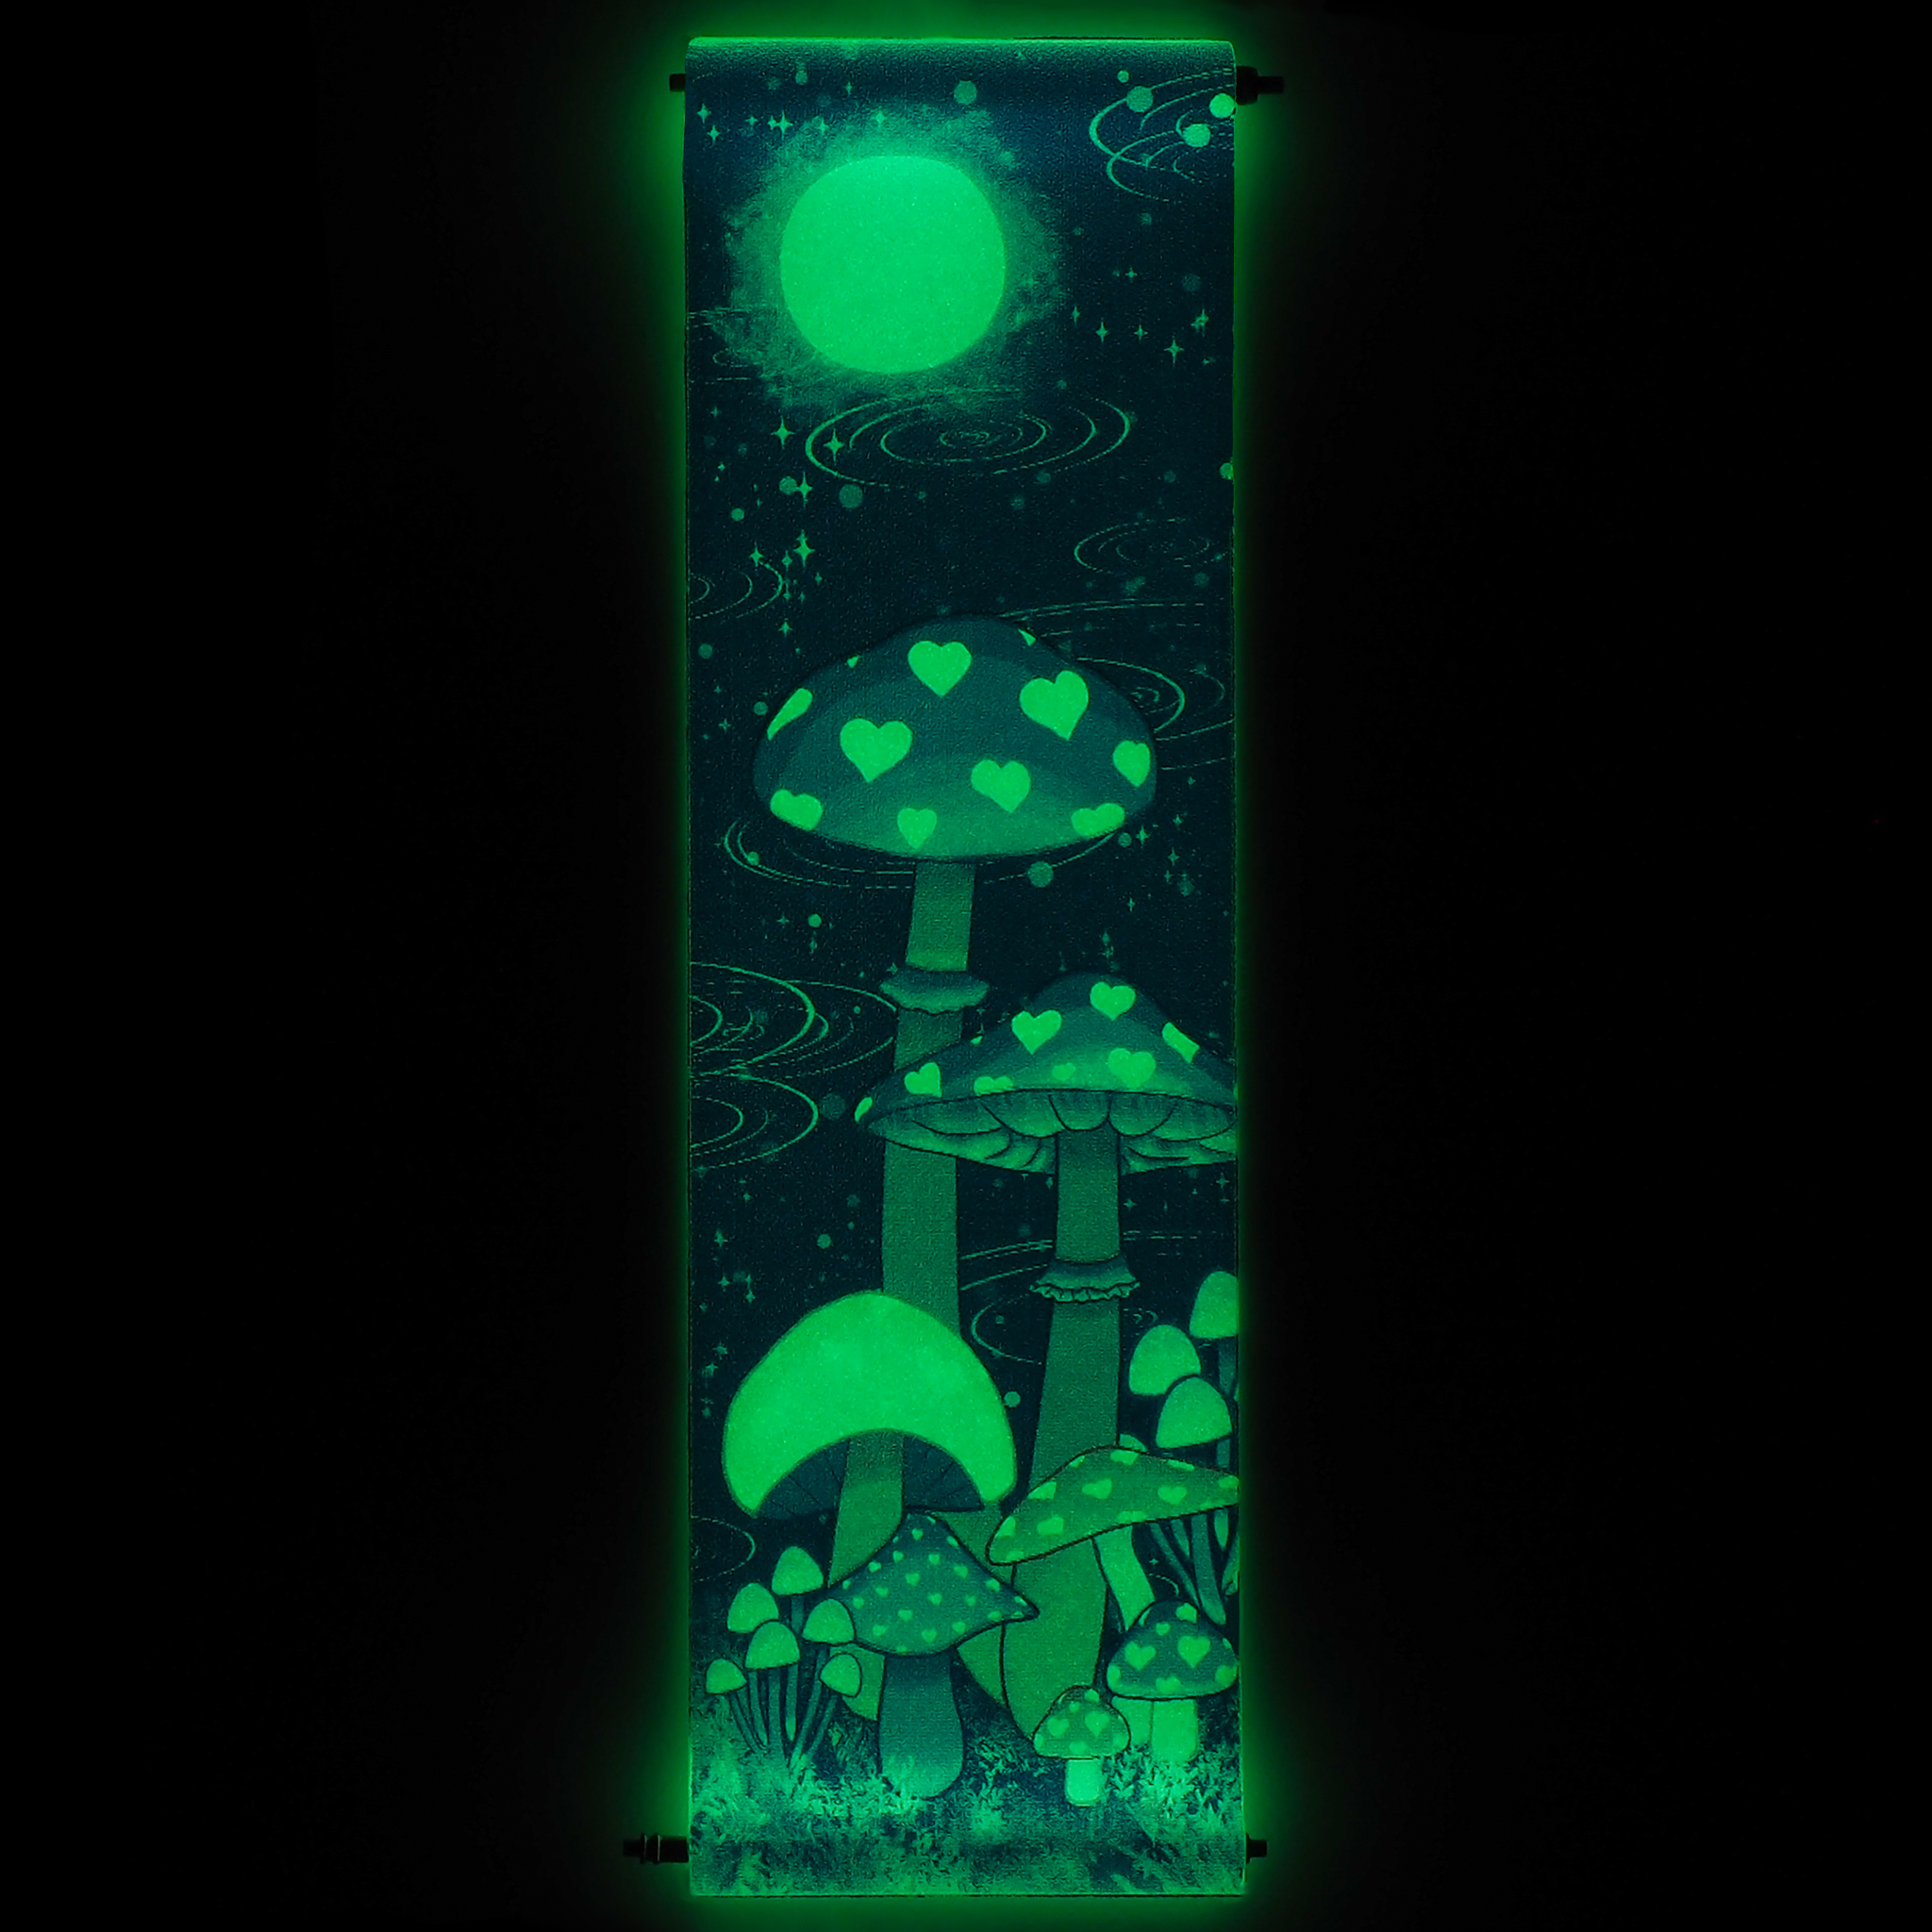 PRO Strap - Midnight Mushroom Glow